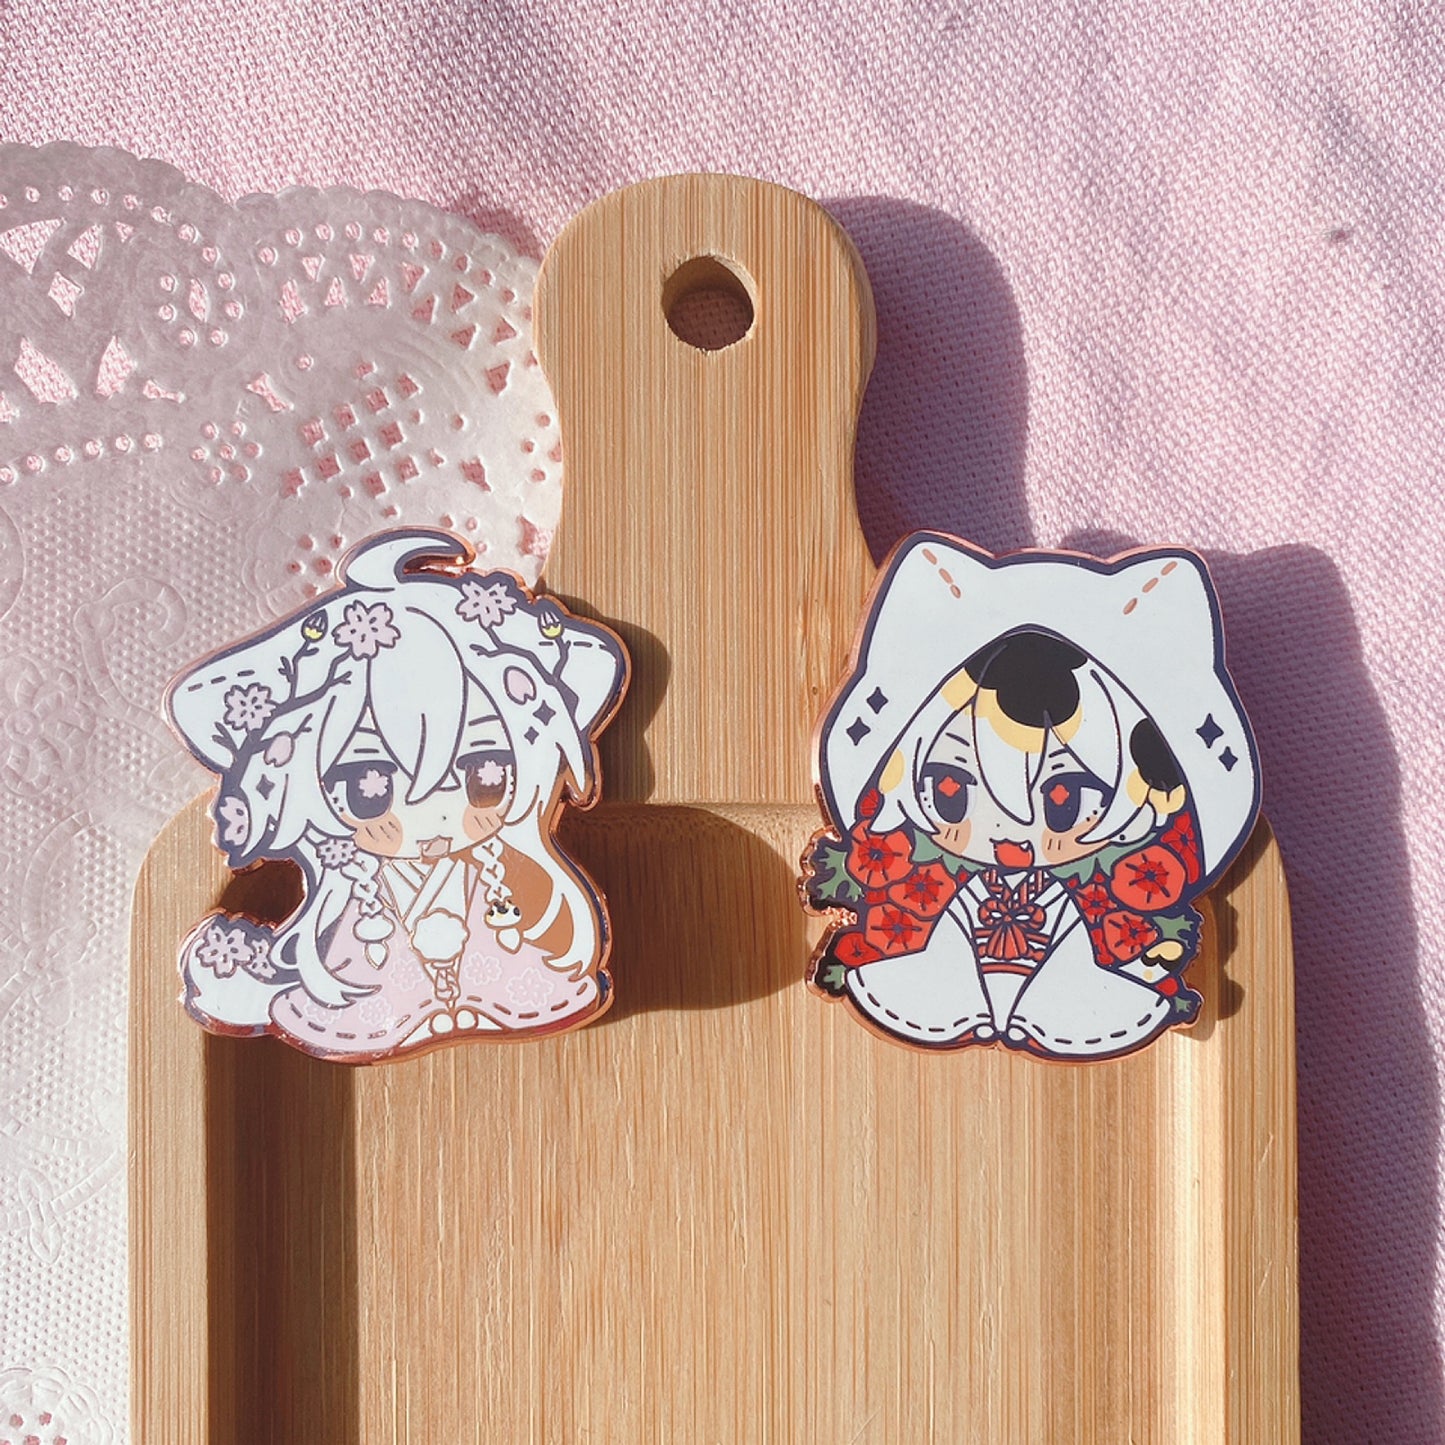 Sakura White + Poppy Calico Wedding Day | Enamel Pins